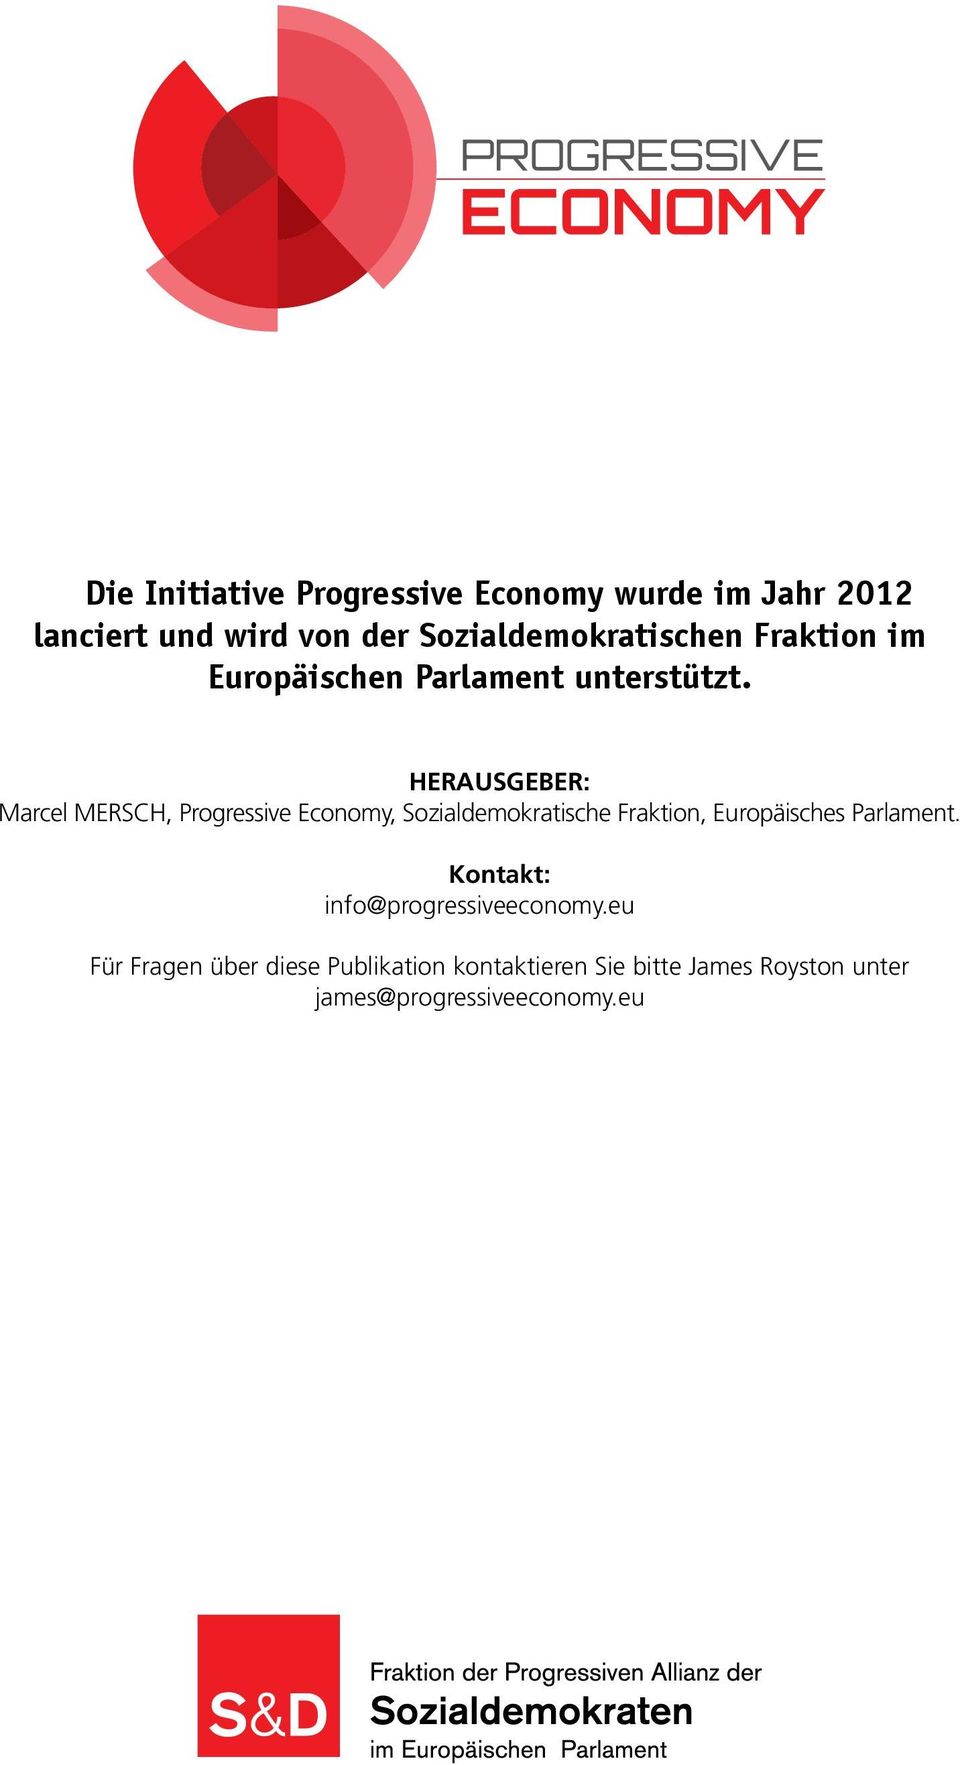 Herausgeber: Marcel MERSCH, Progressive Economy, Sozialdemokratische Fraktion, Europäisches